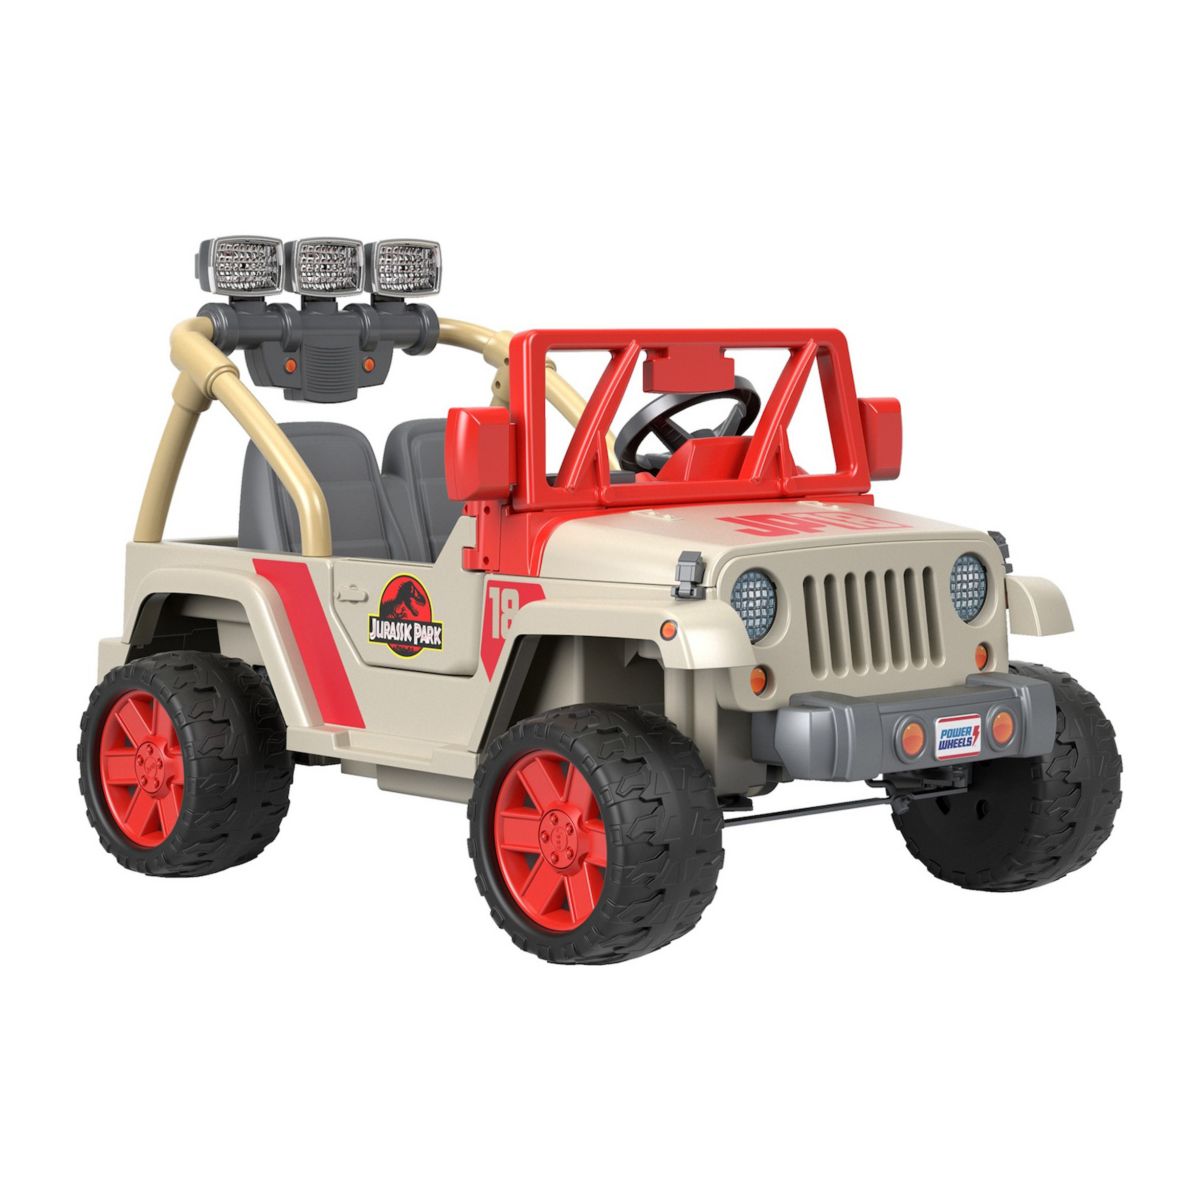 Jeep Wrangler Power Wheels Парк Юрского периода: ездовой автомобиль с батарейным питанием от Fisher-Price Power Wheels